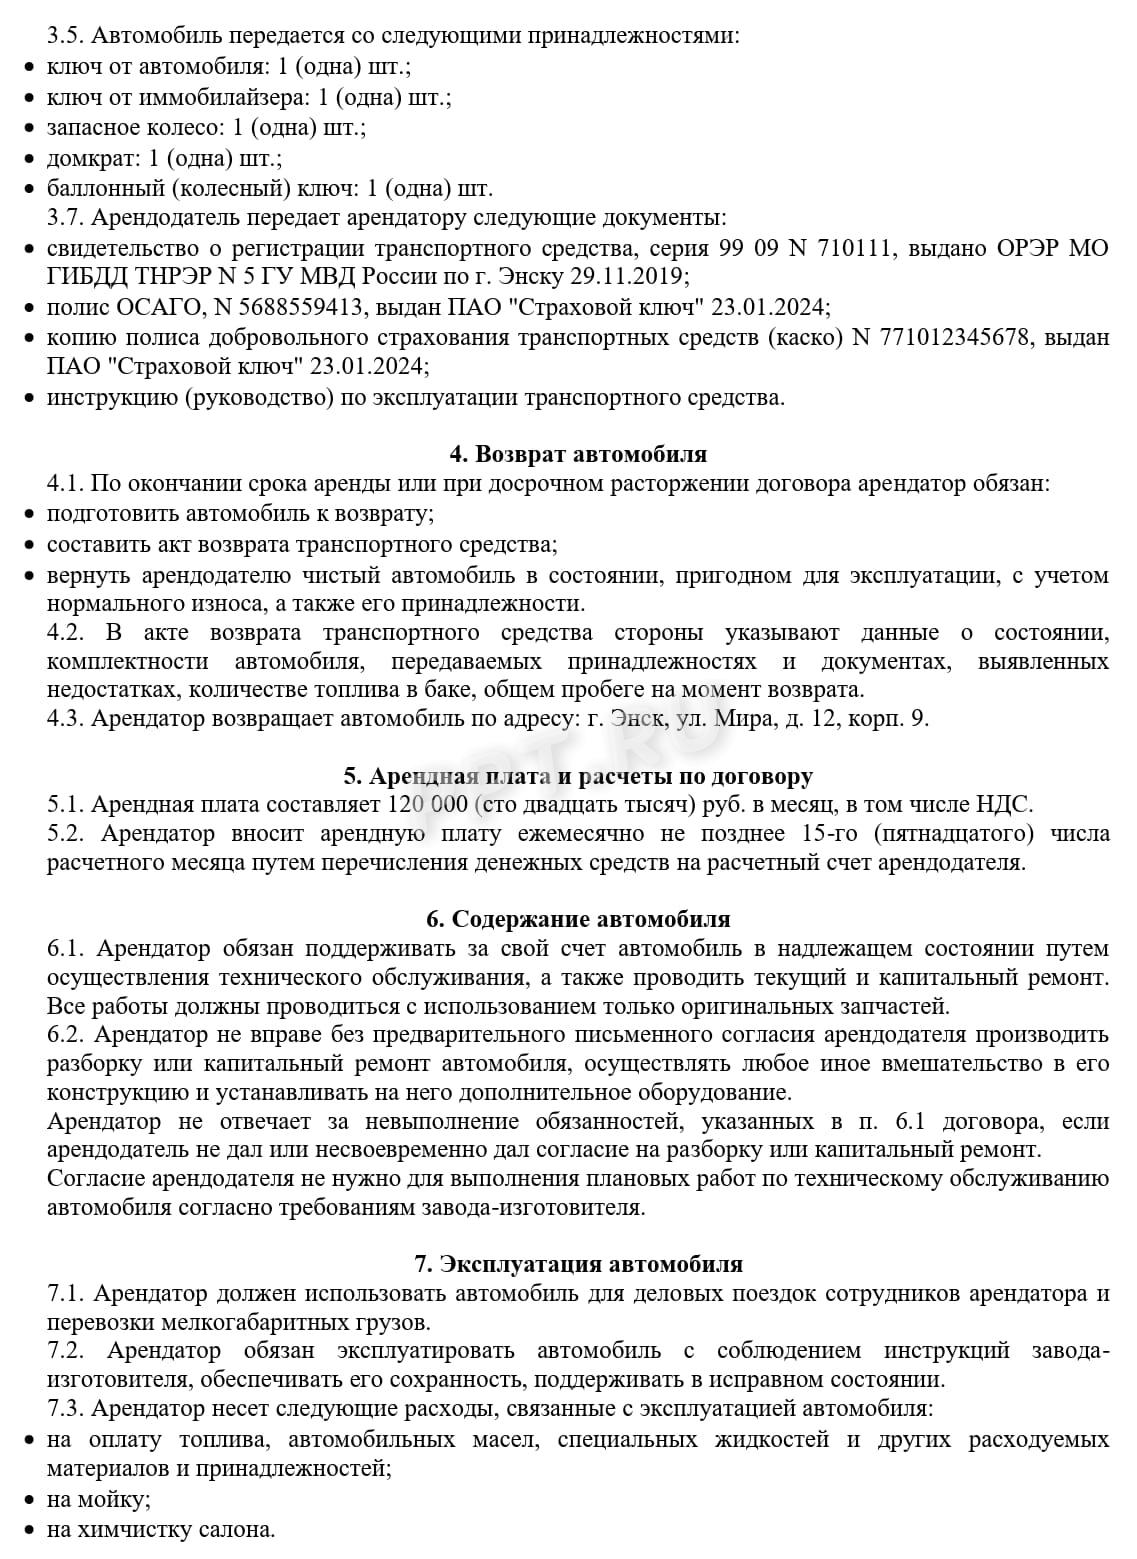 Образец договора аренды ТС без экипажа, стр. 2